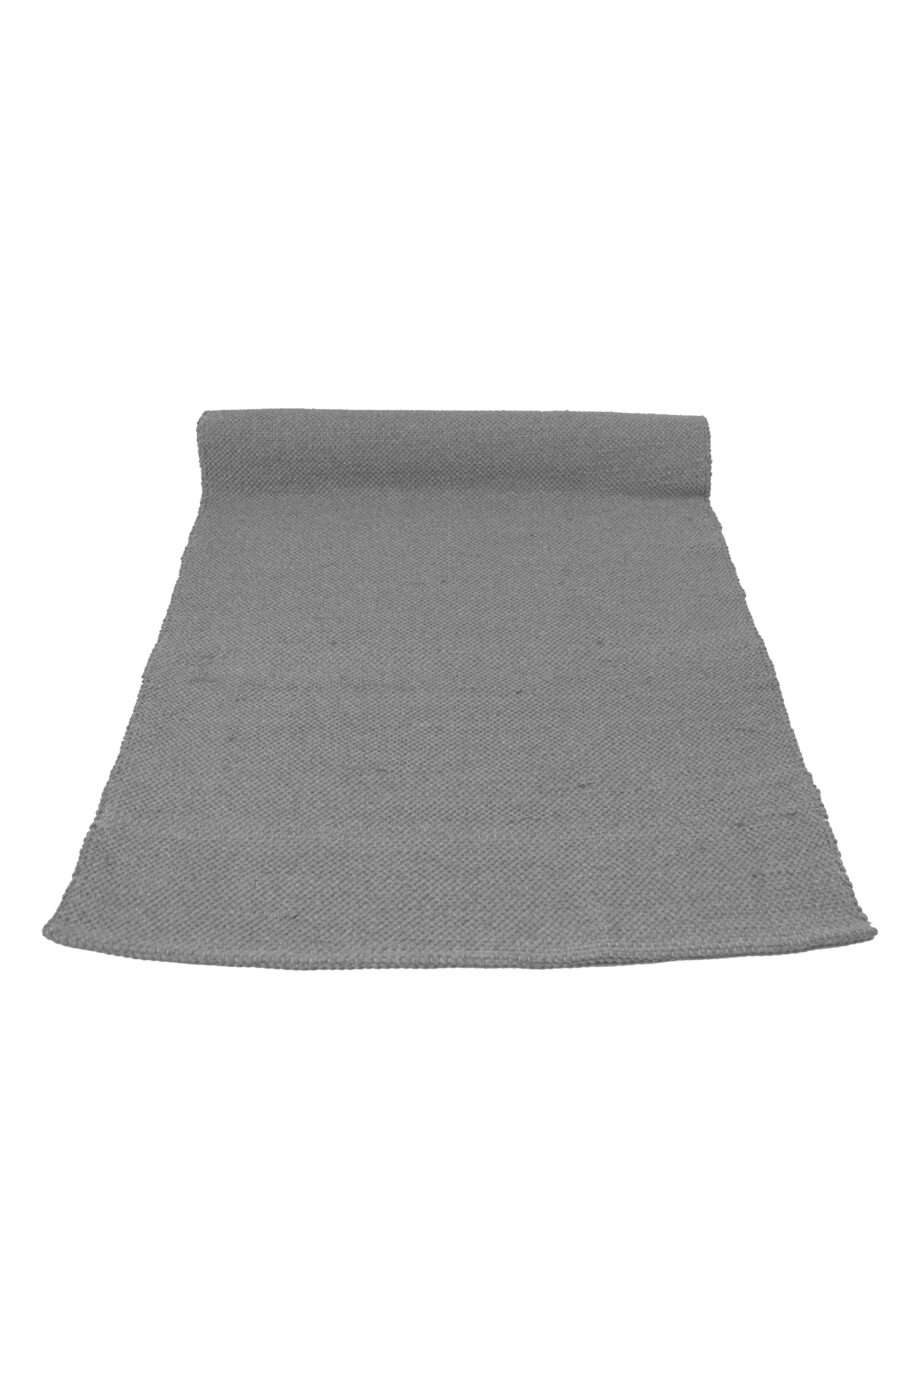 Scandinavian look- inspired light grey minimalist floor runner.